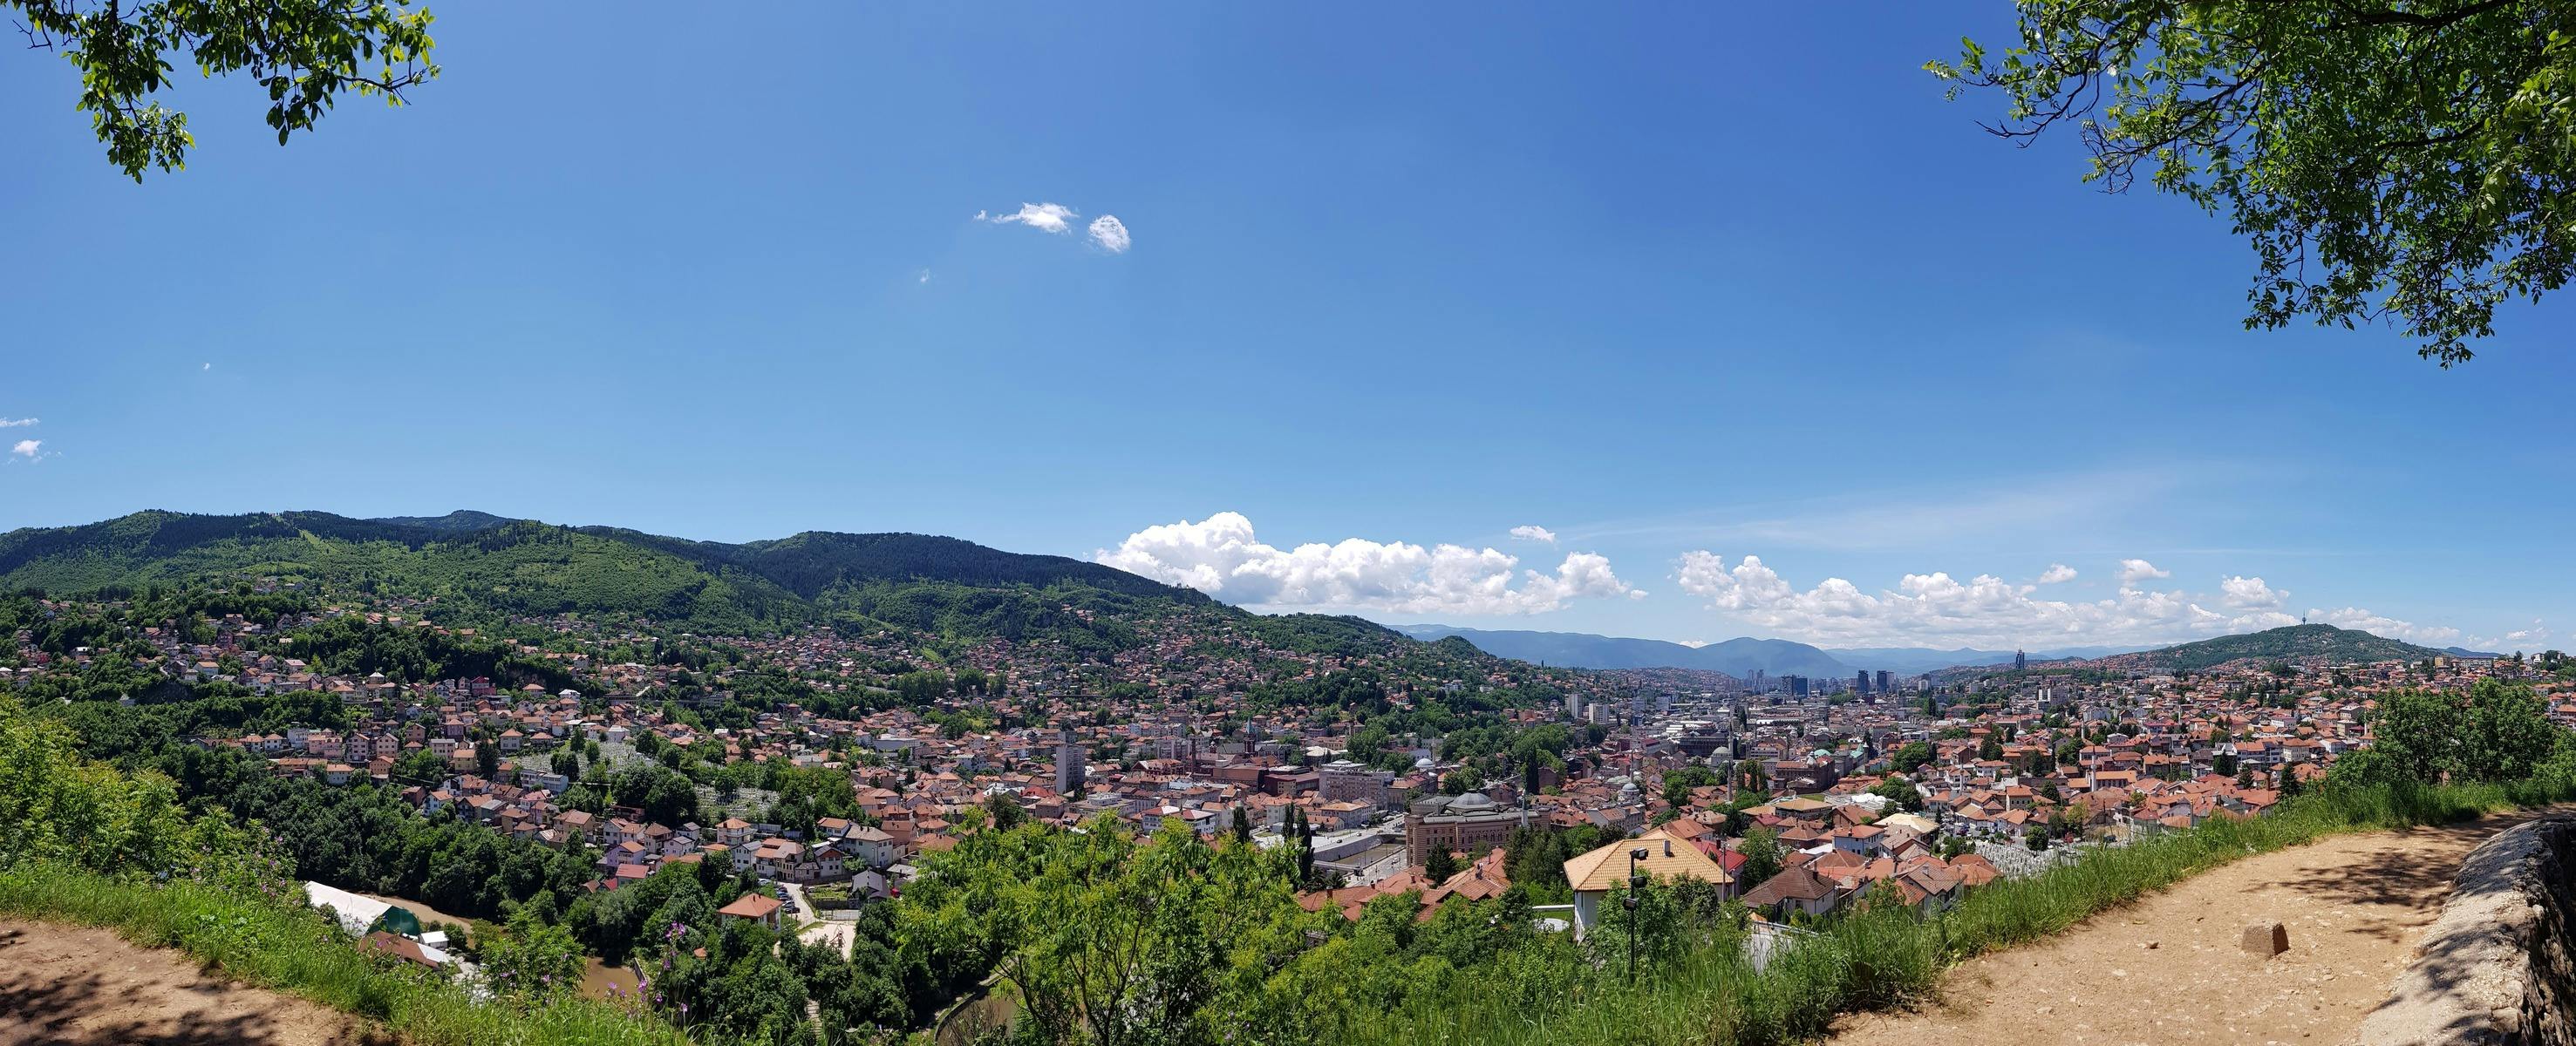 Visita guiada pela cidade velha de Sarajevo